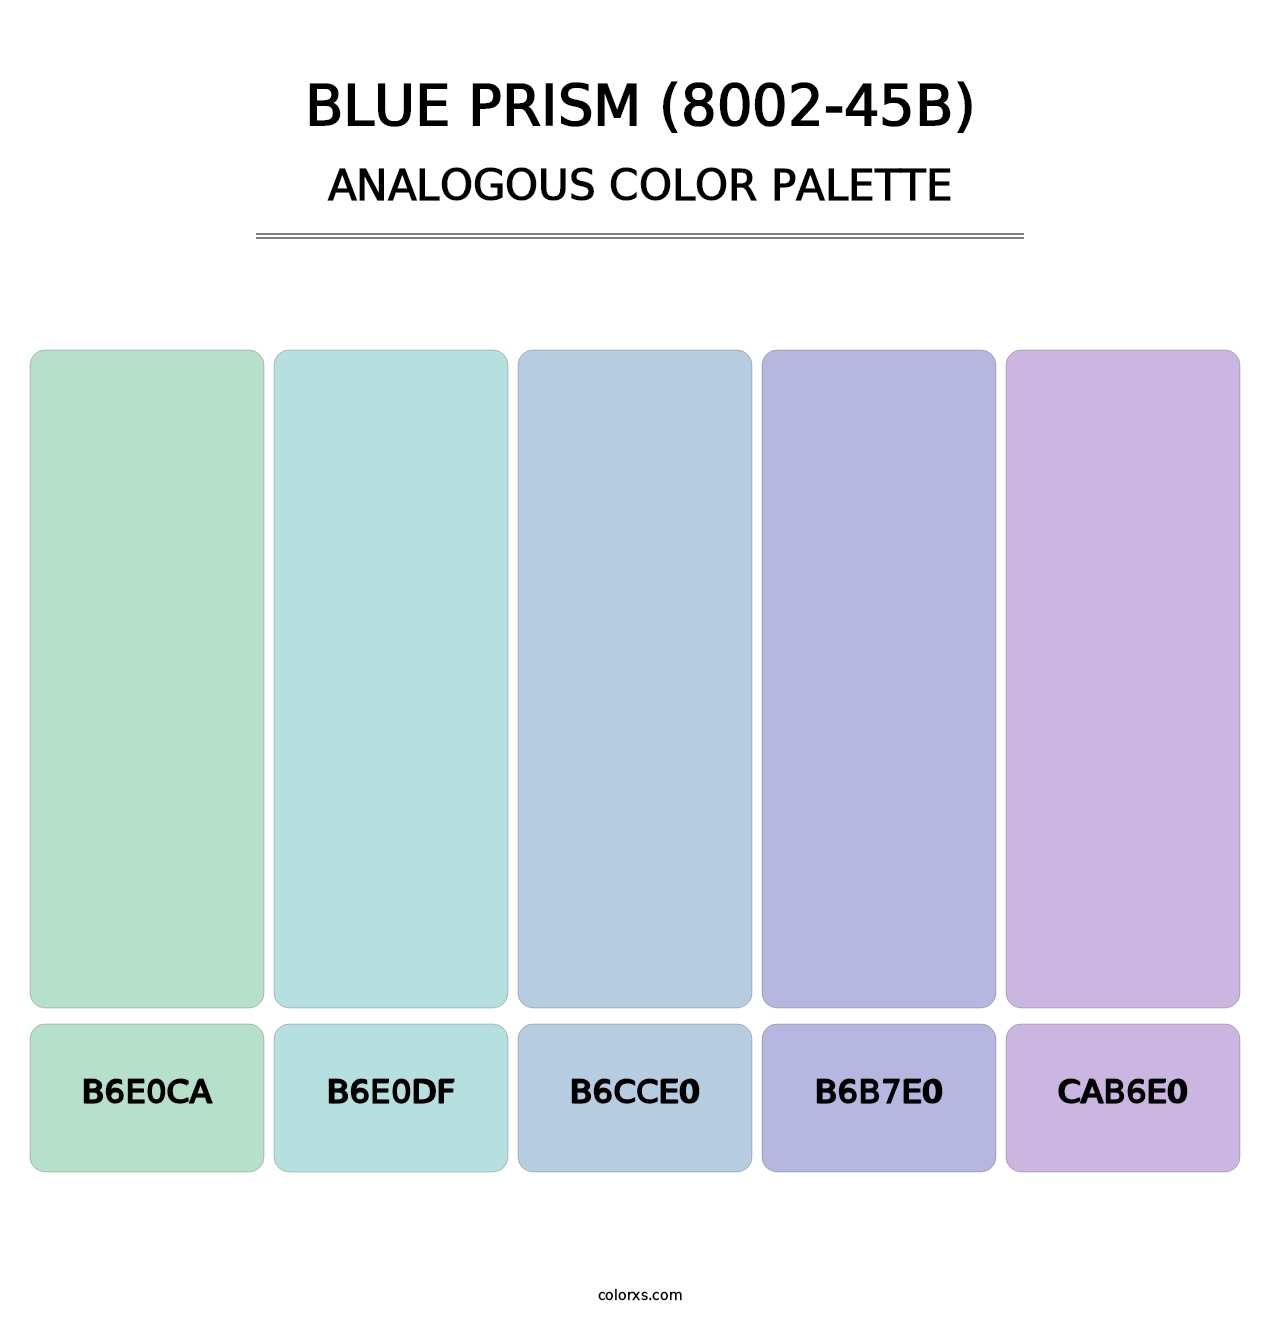 Blue Prism (8002-45B) - Analogous Color Palette